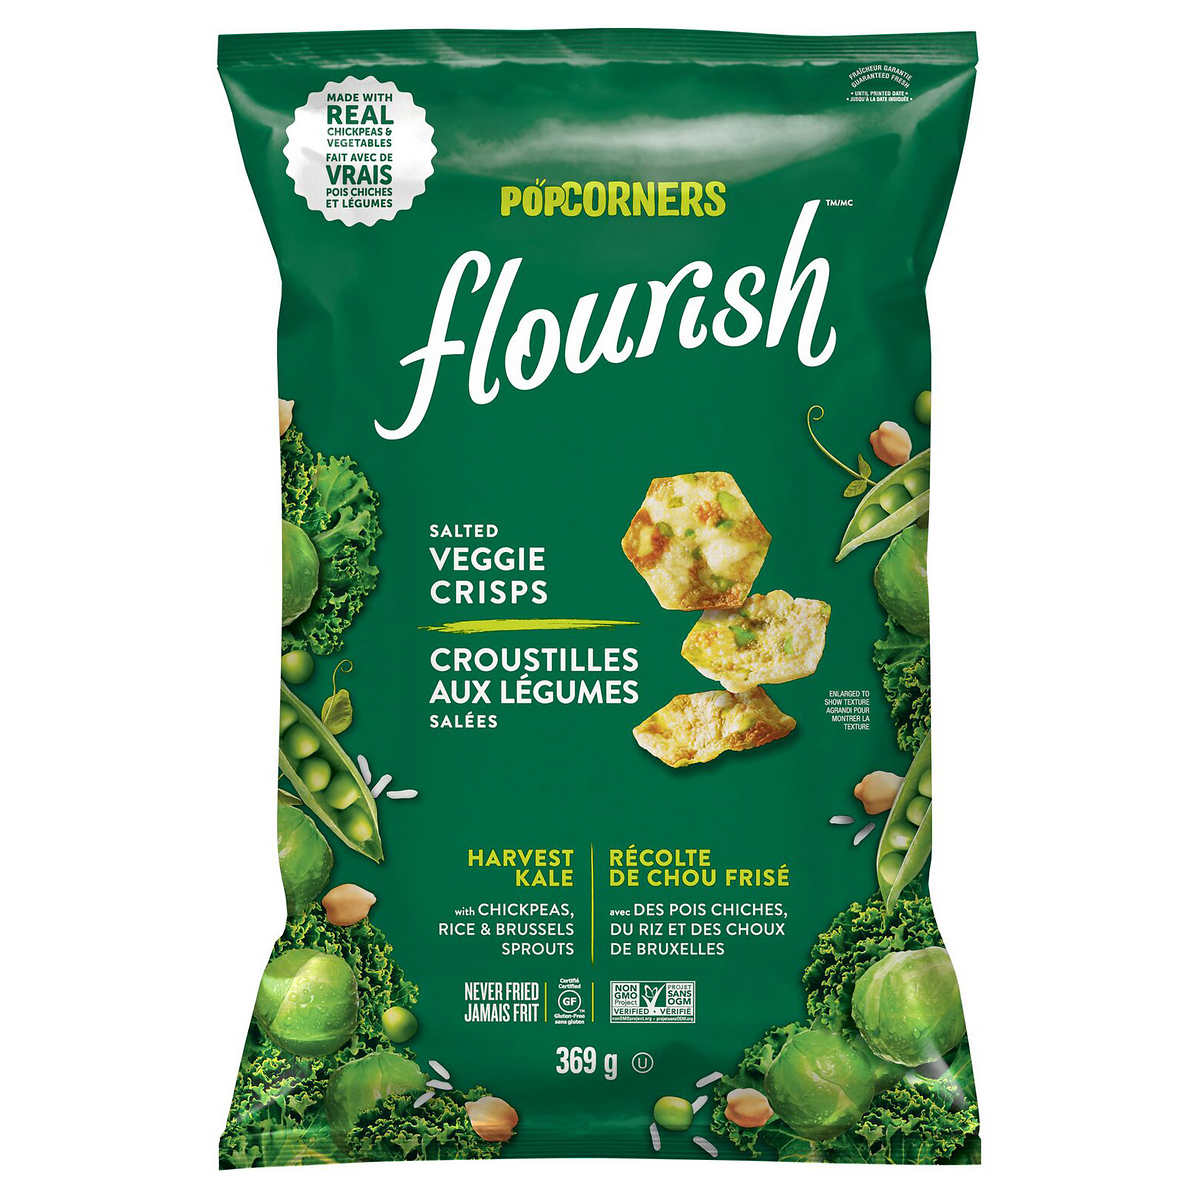 Popcorners Flourish Harvest Kale Veggie Crisps 369 G Costco